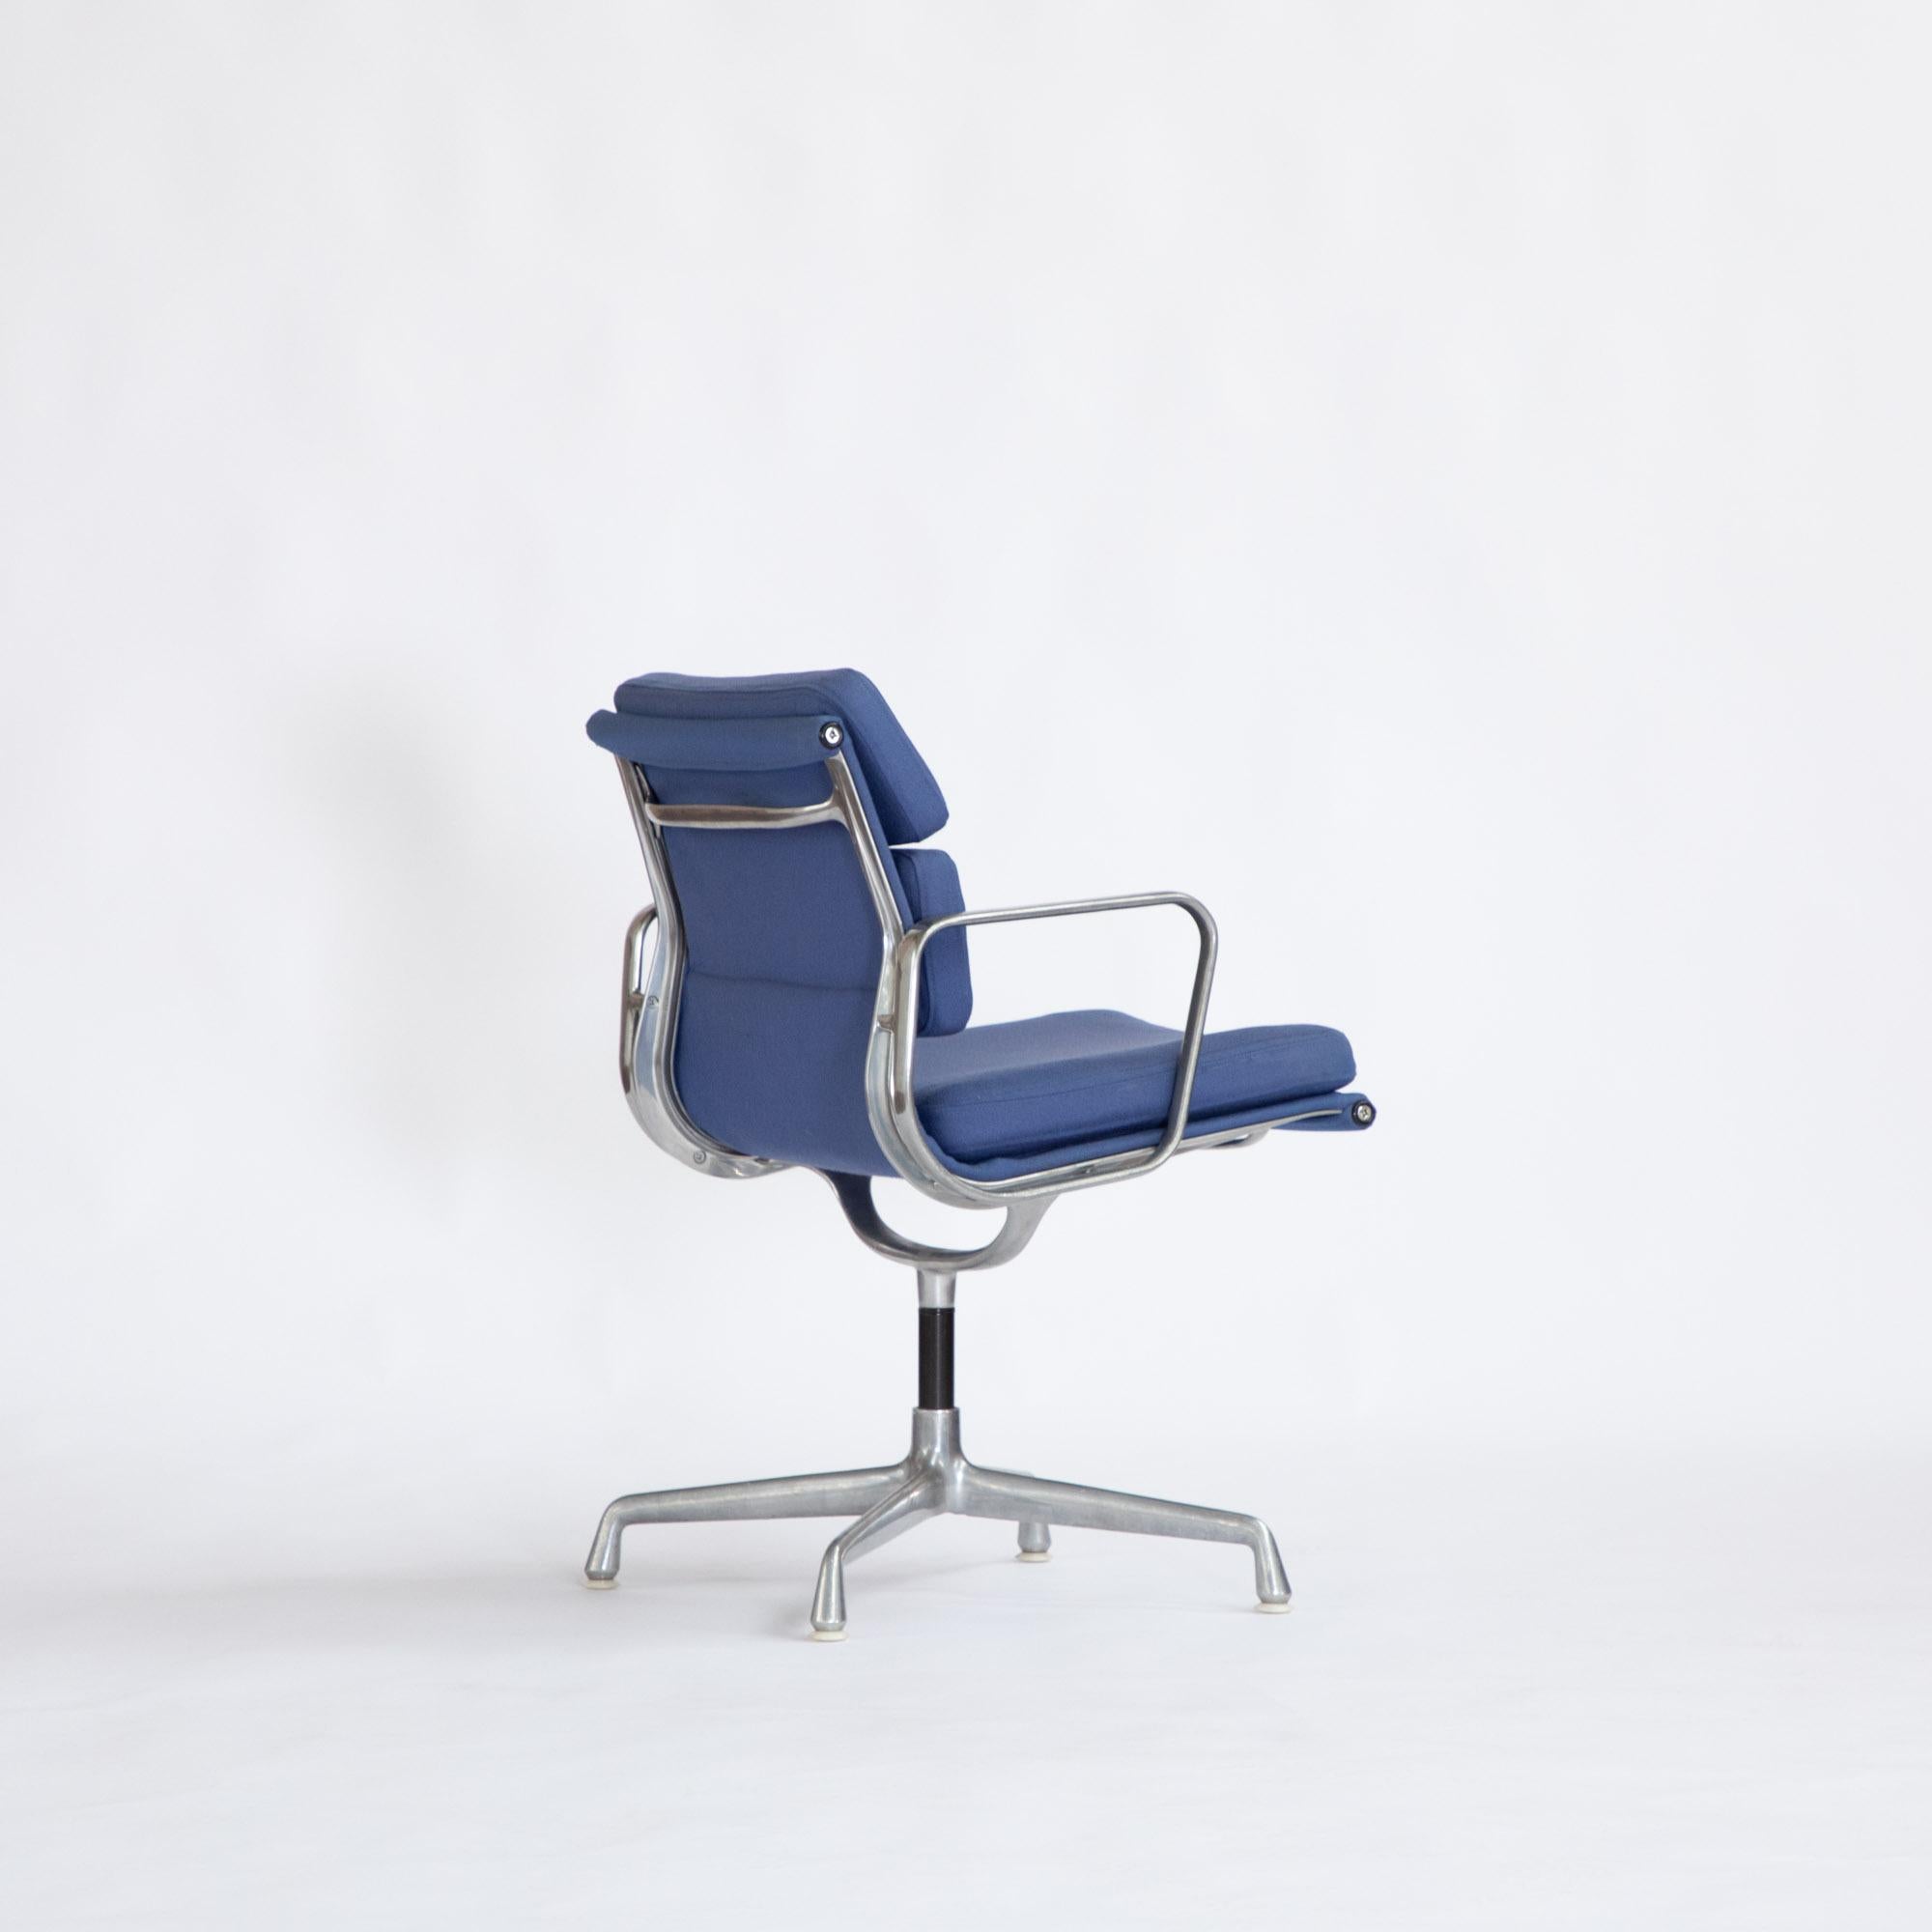 Großartiges Beispiel für den EA208, entworfen von Charles und Ray Eames im Jahr 1969.
Hergestellt von Herman Miller USA 1973-75
Feste Sitzhöhe
Drehbarer Sitz auf einem 4-Stern-Aluminiumrahmen. Einige leichte Abnutzung des Rahmens im Einklang mit dem